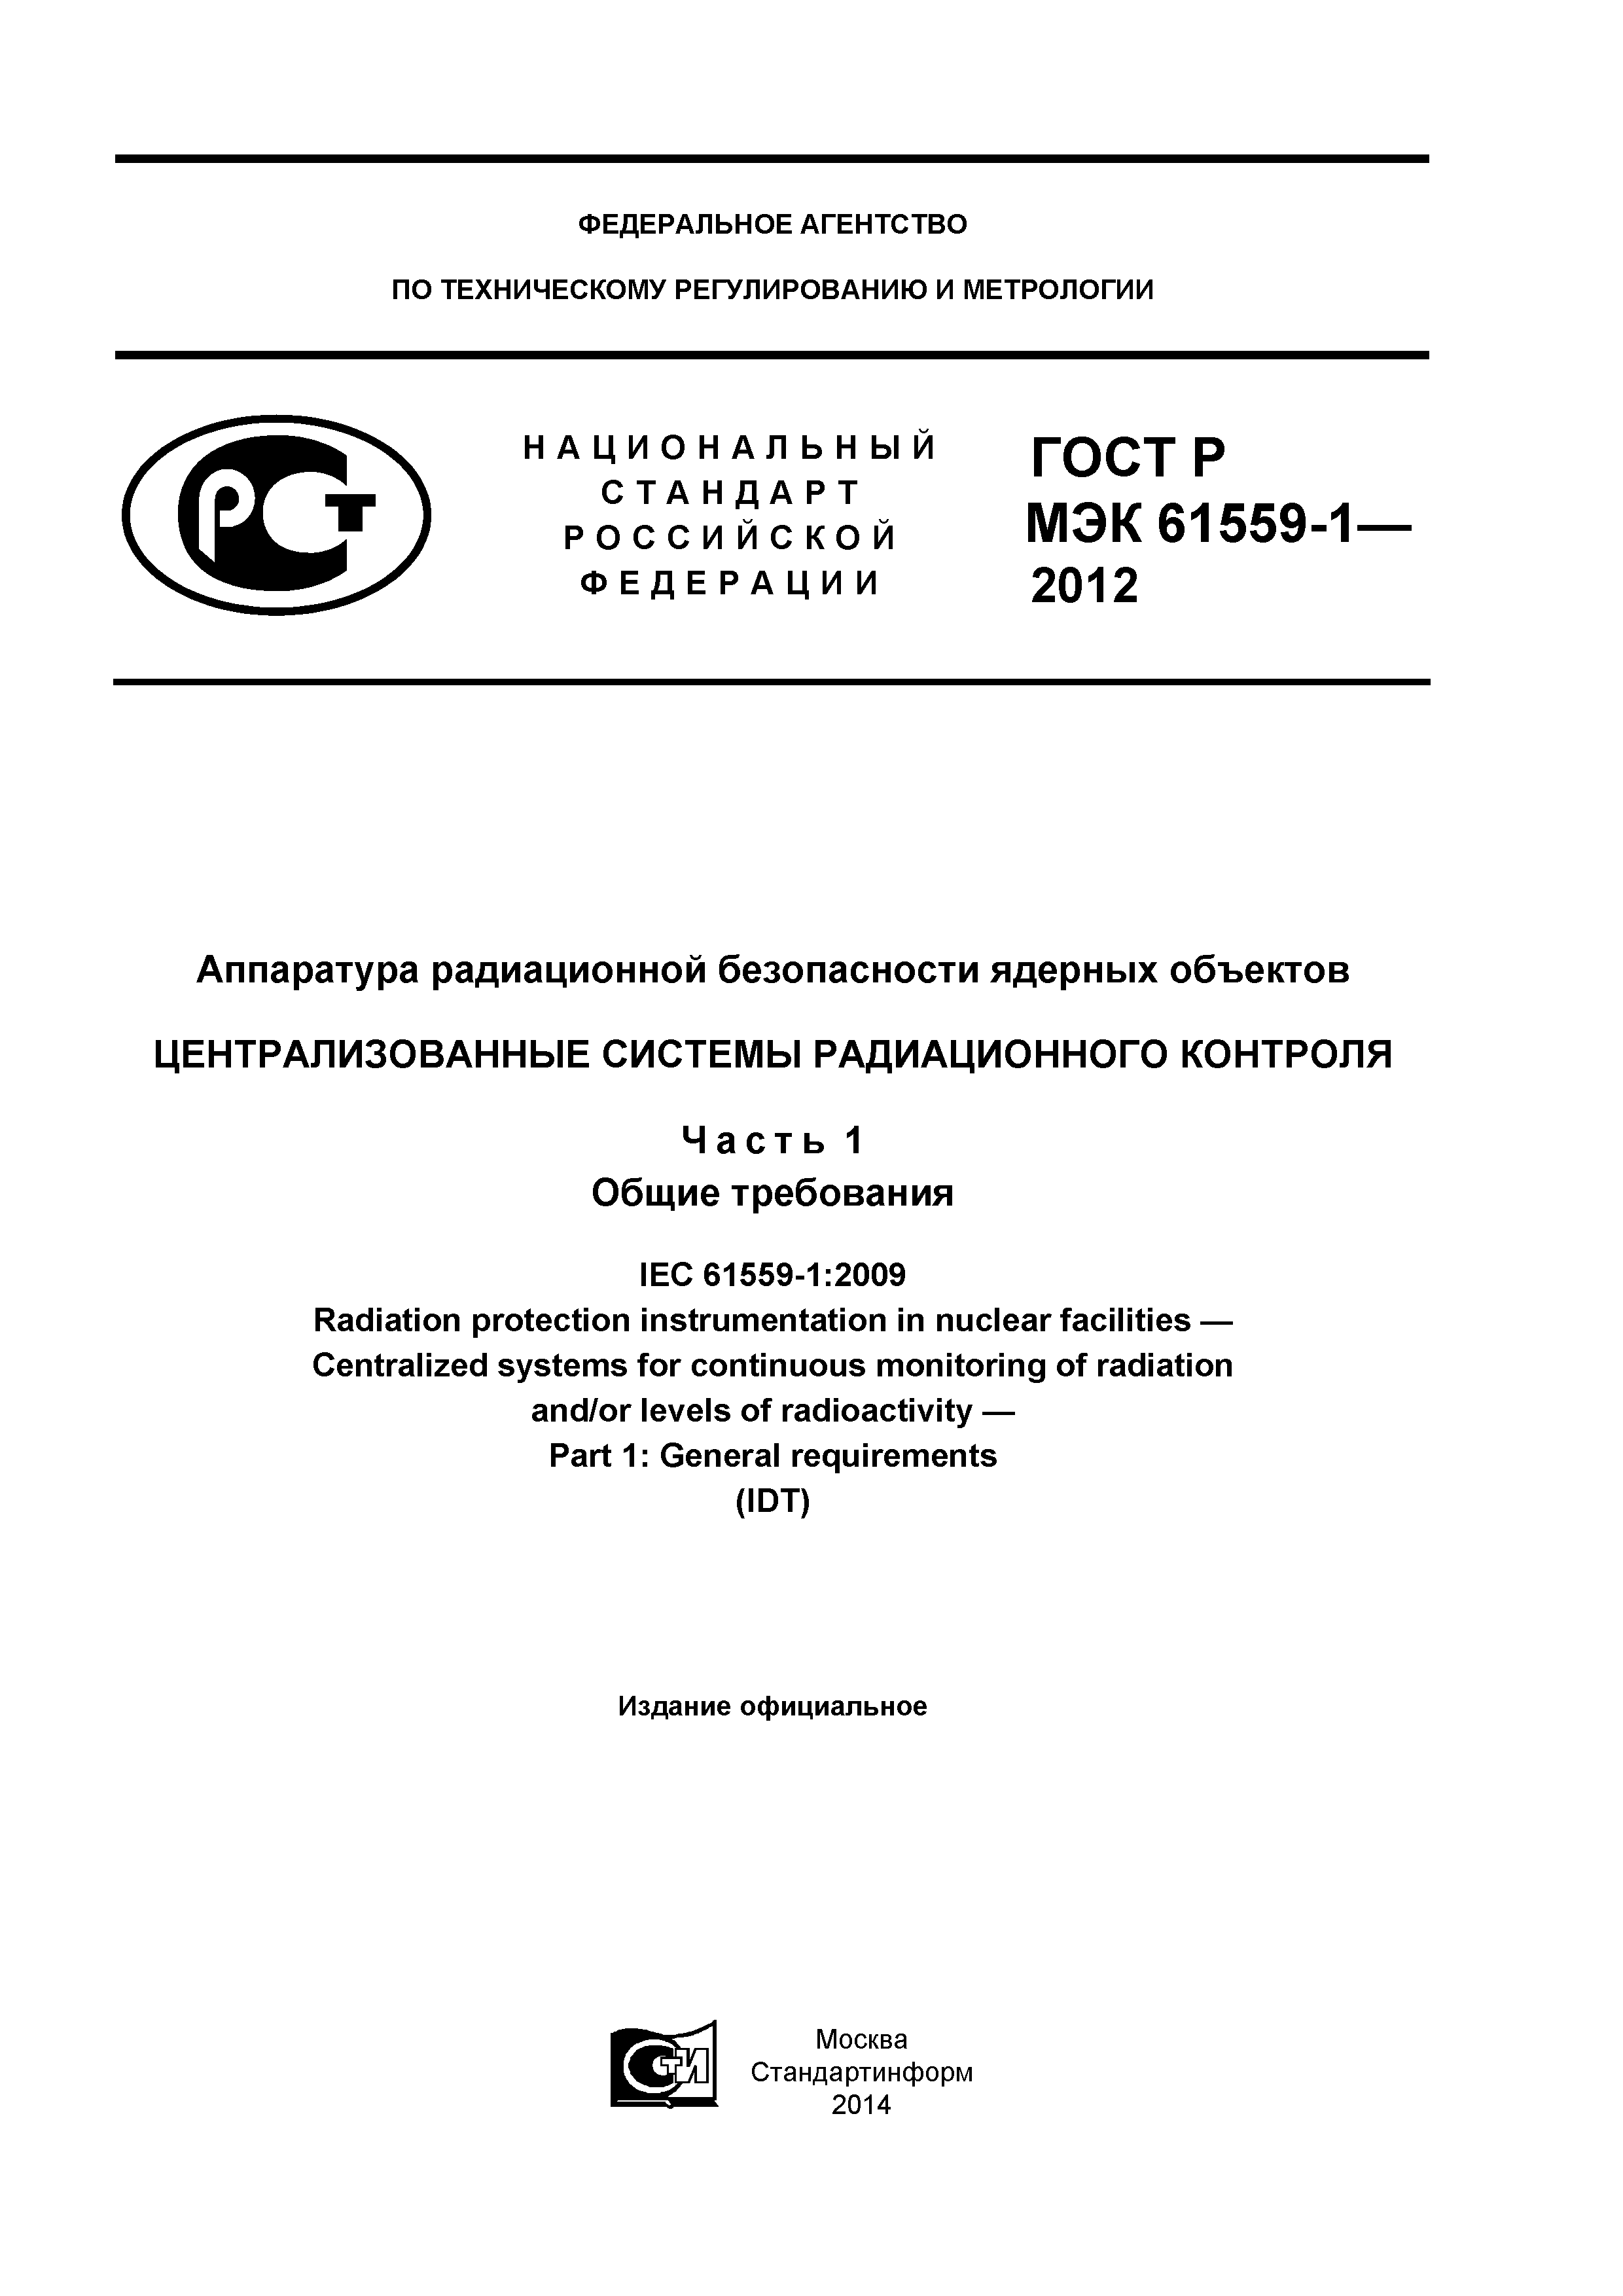 ГОСТ Р МЭК 61559-1-2012